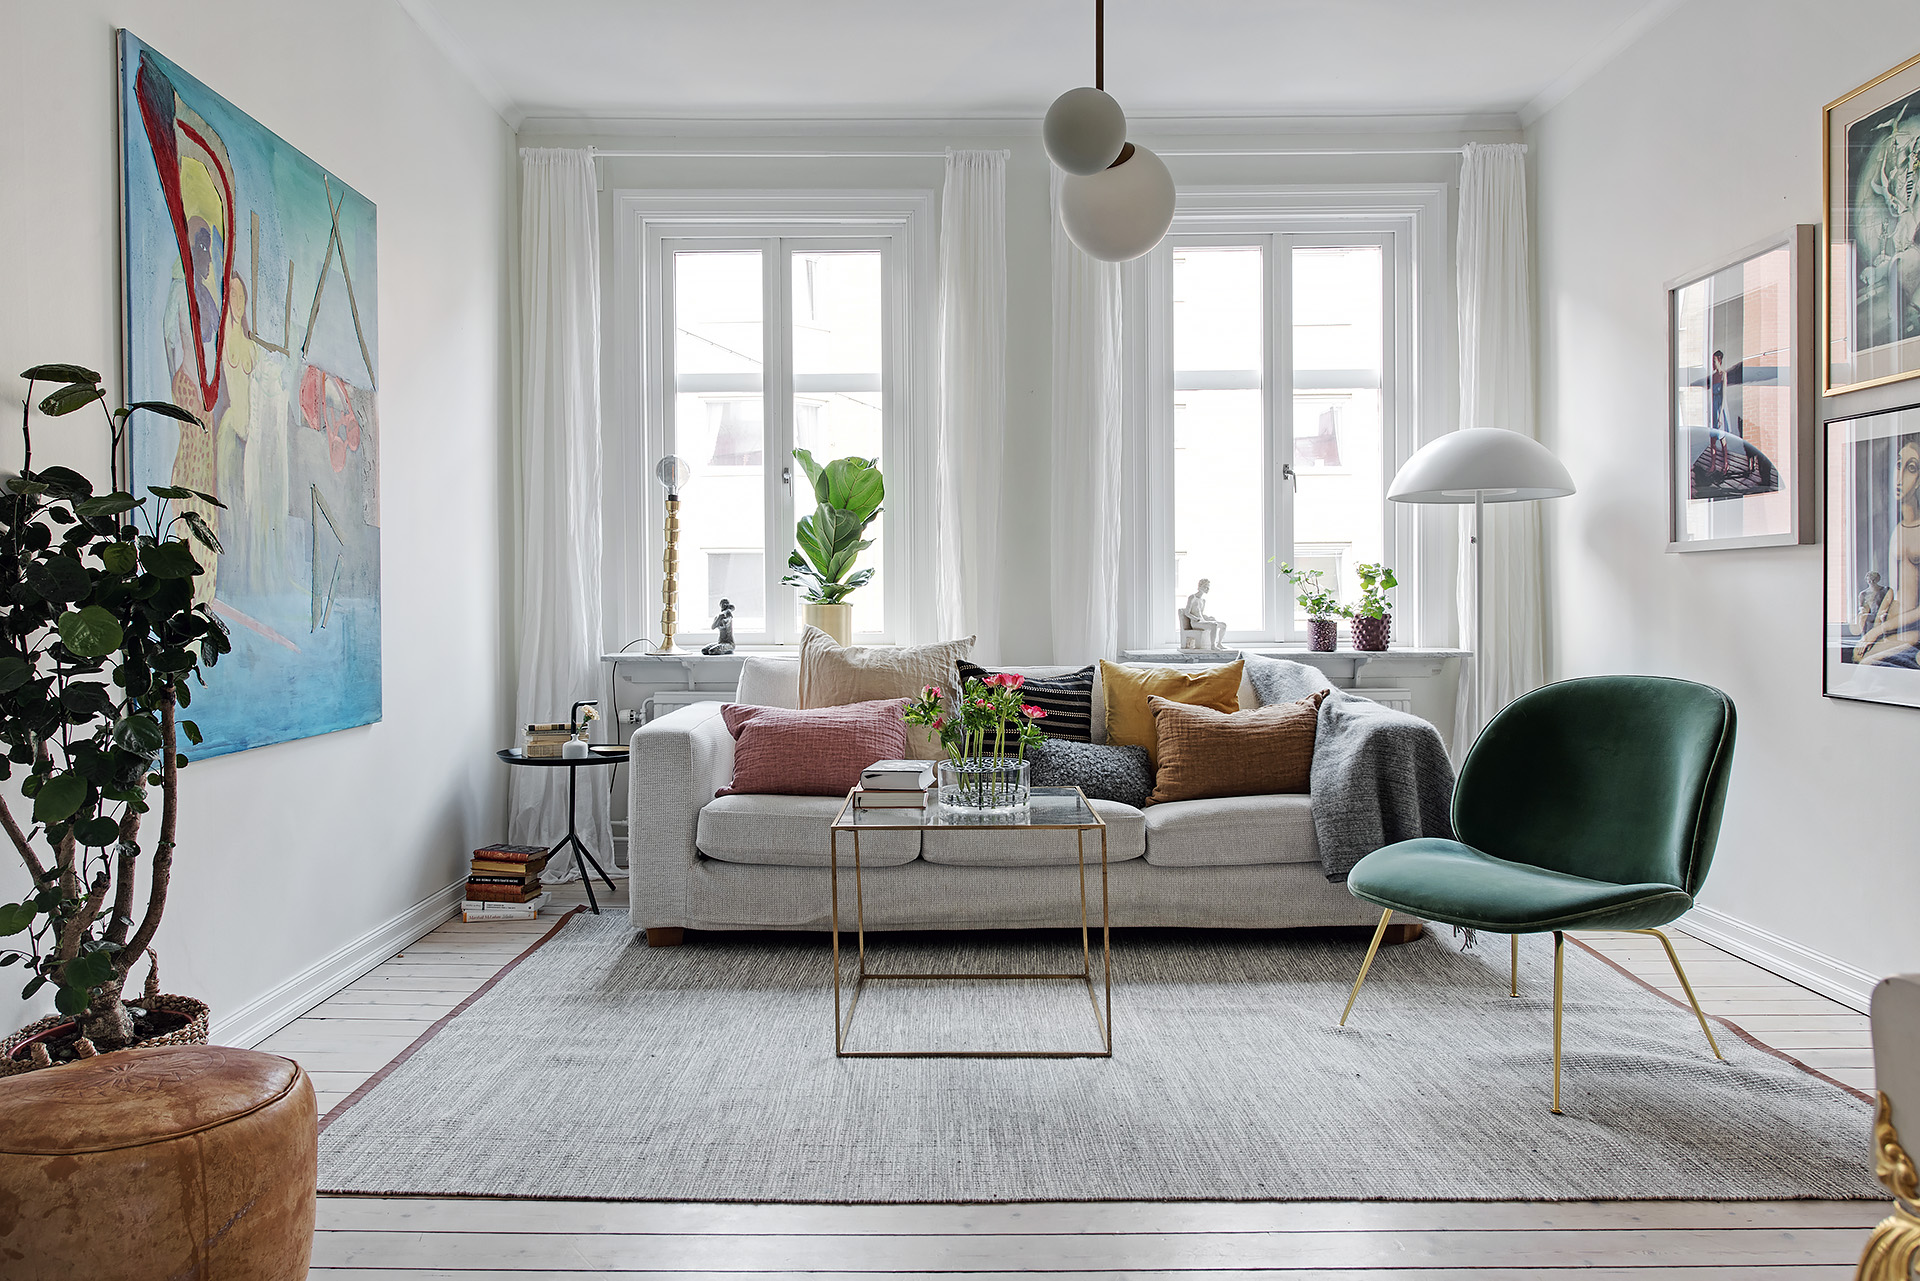 delikatissen terciopelo decoracion tendencias deco 2018 sillón sofa terciopelo fundas cojin estilo nórdico estilo escandinavo decoración salones 